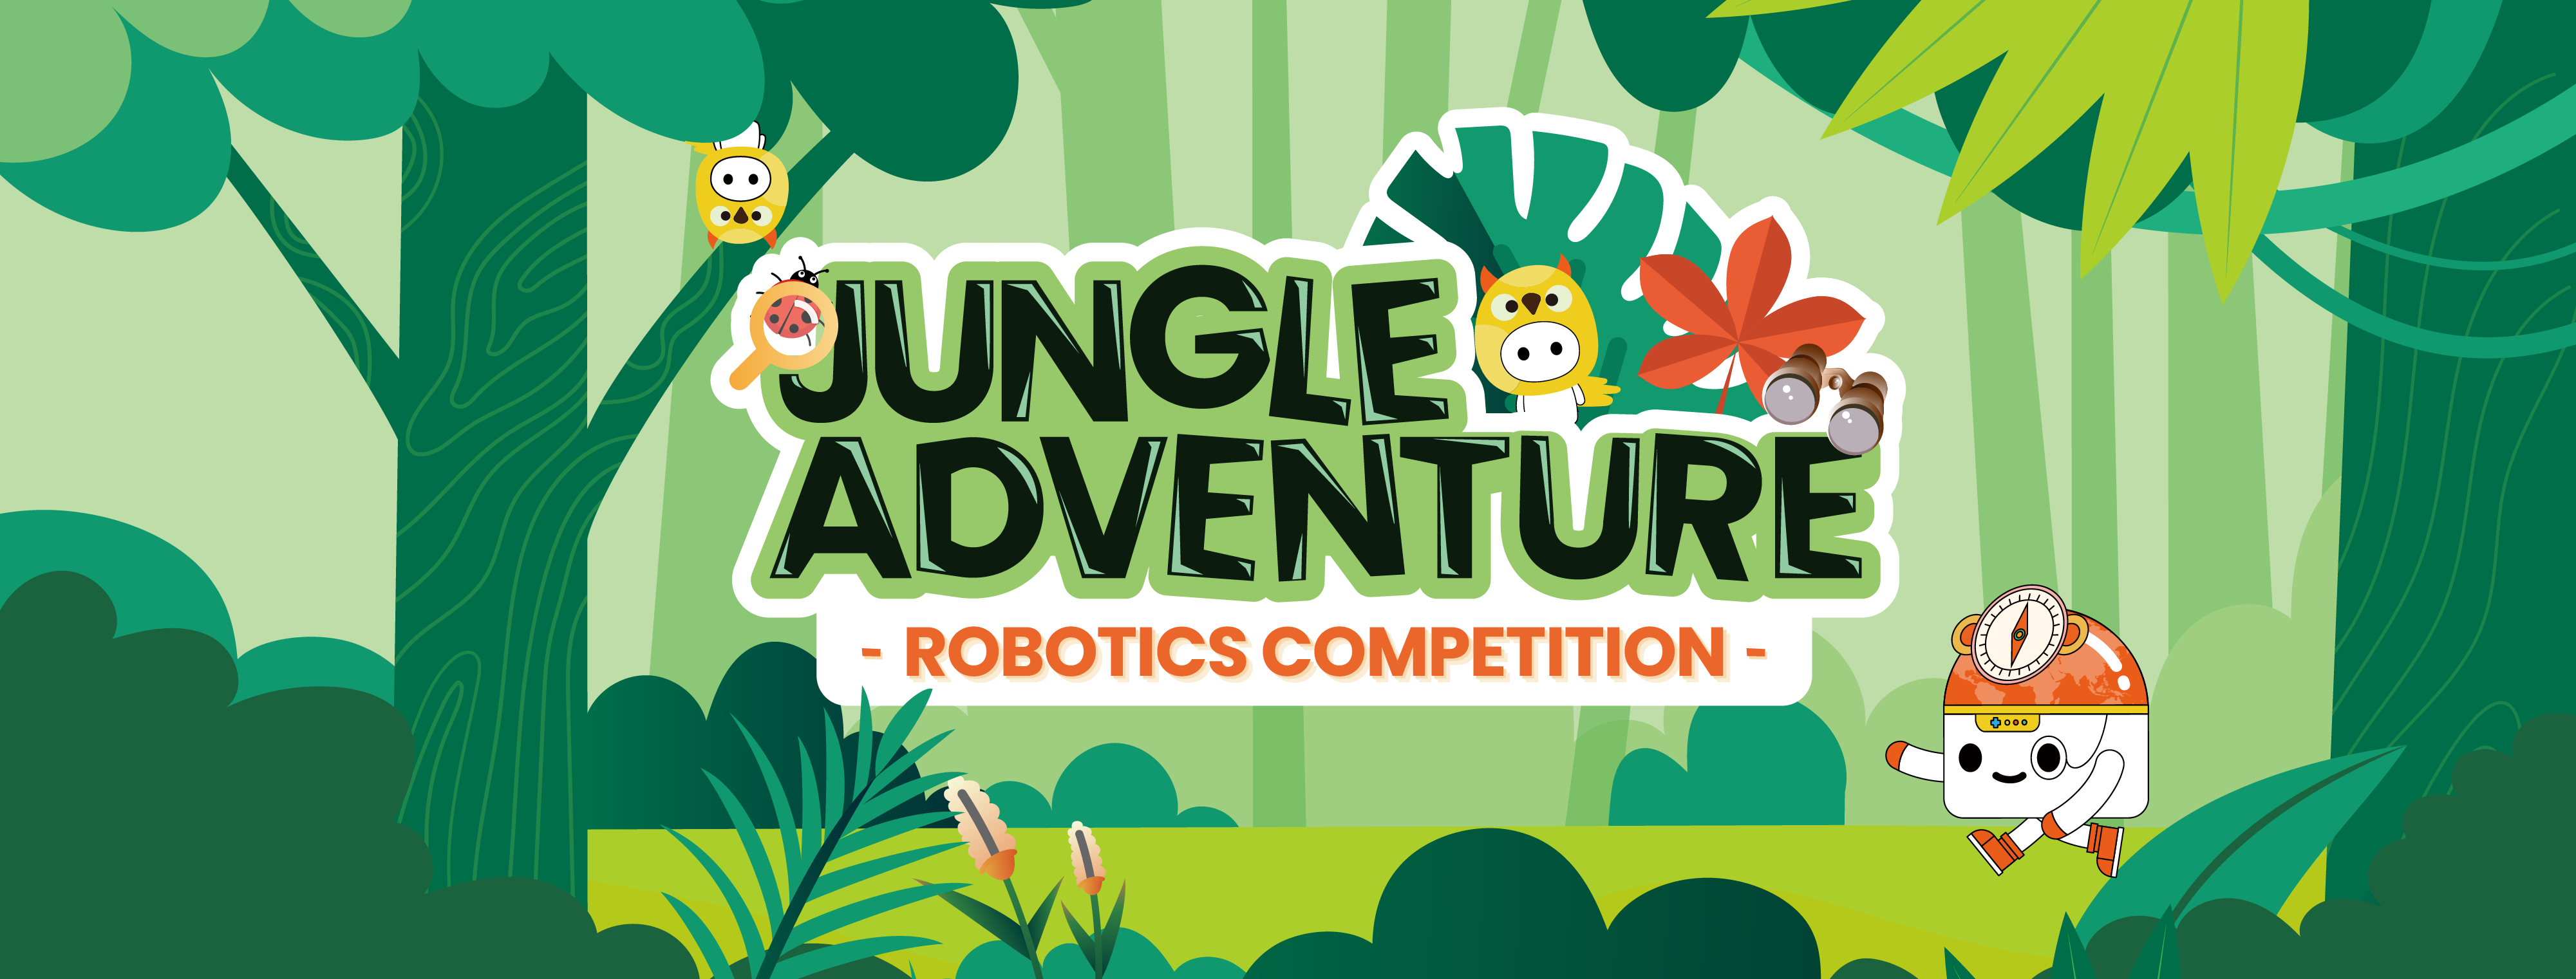 Matatalab Jungle Adventure Robotics Competition